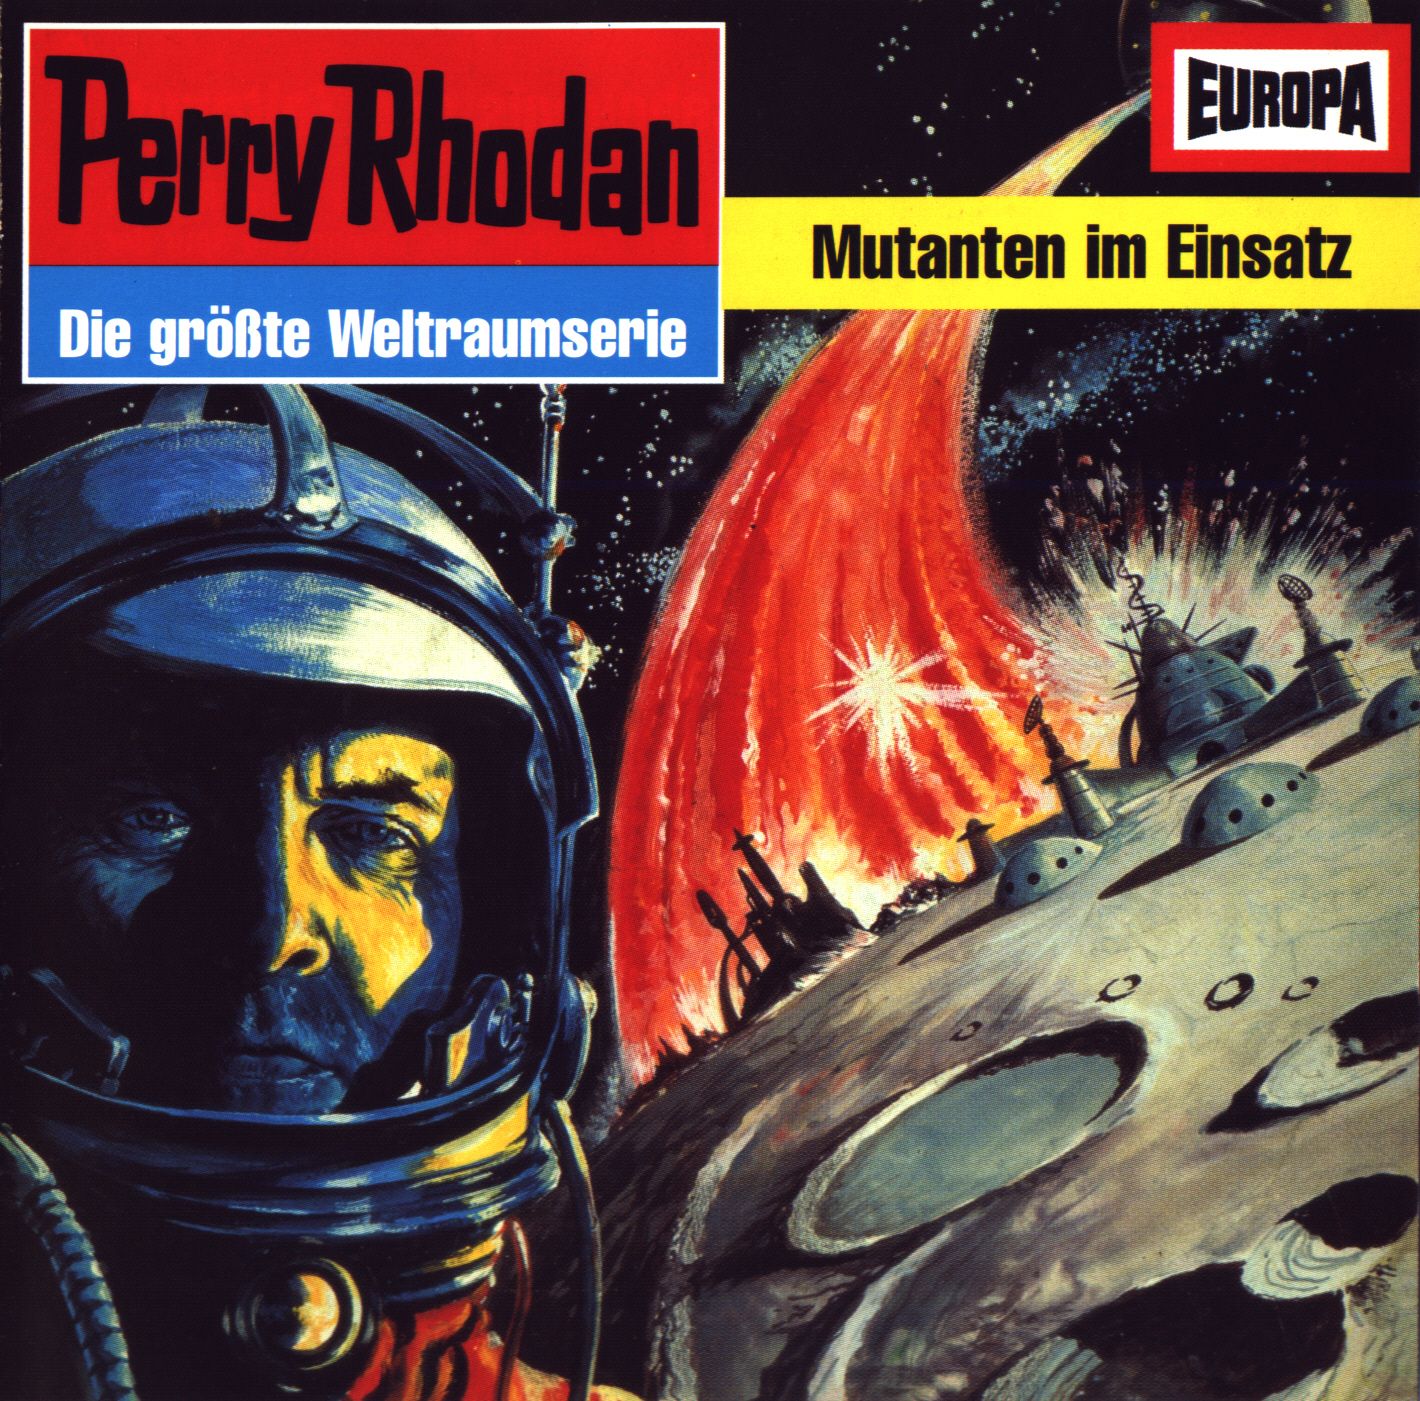 Perry Rhodan: Mutanten im Einsatz